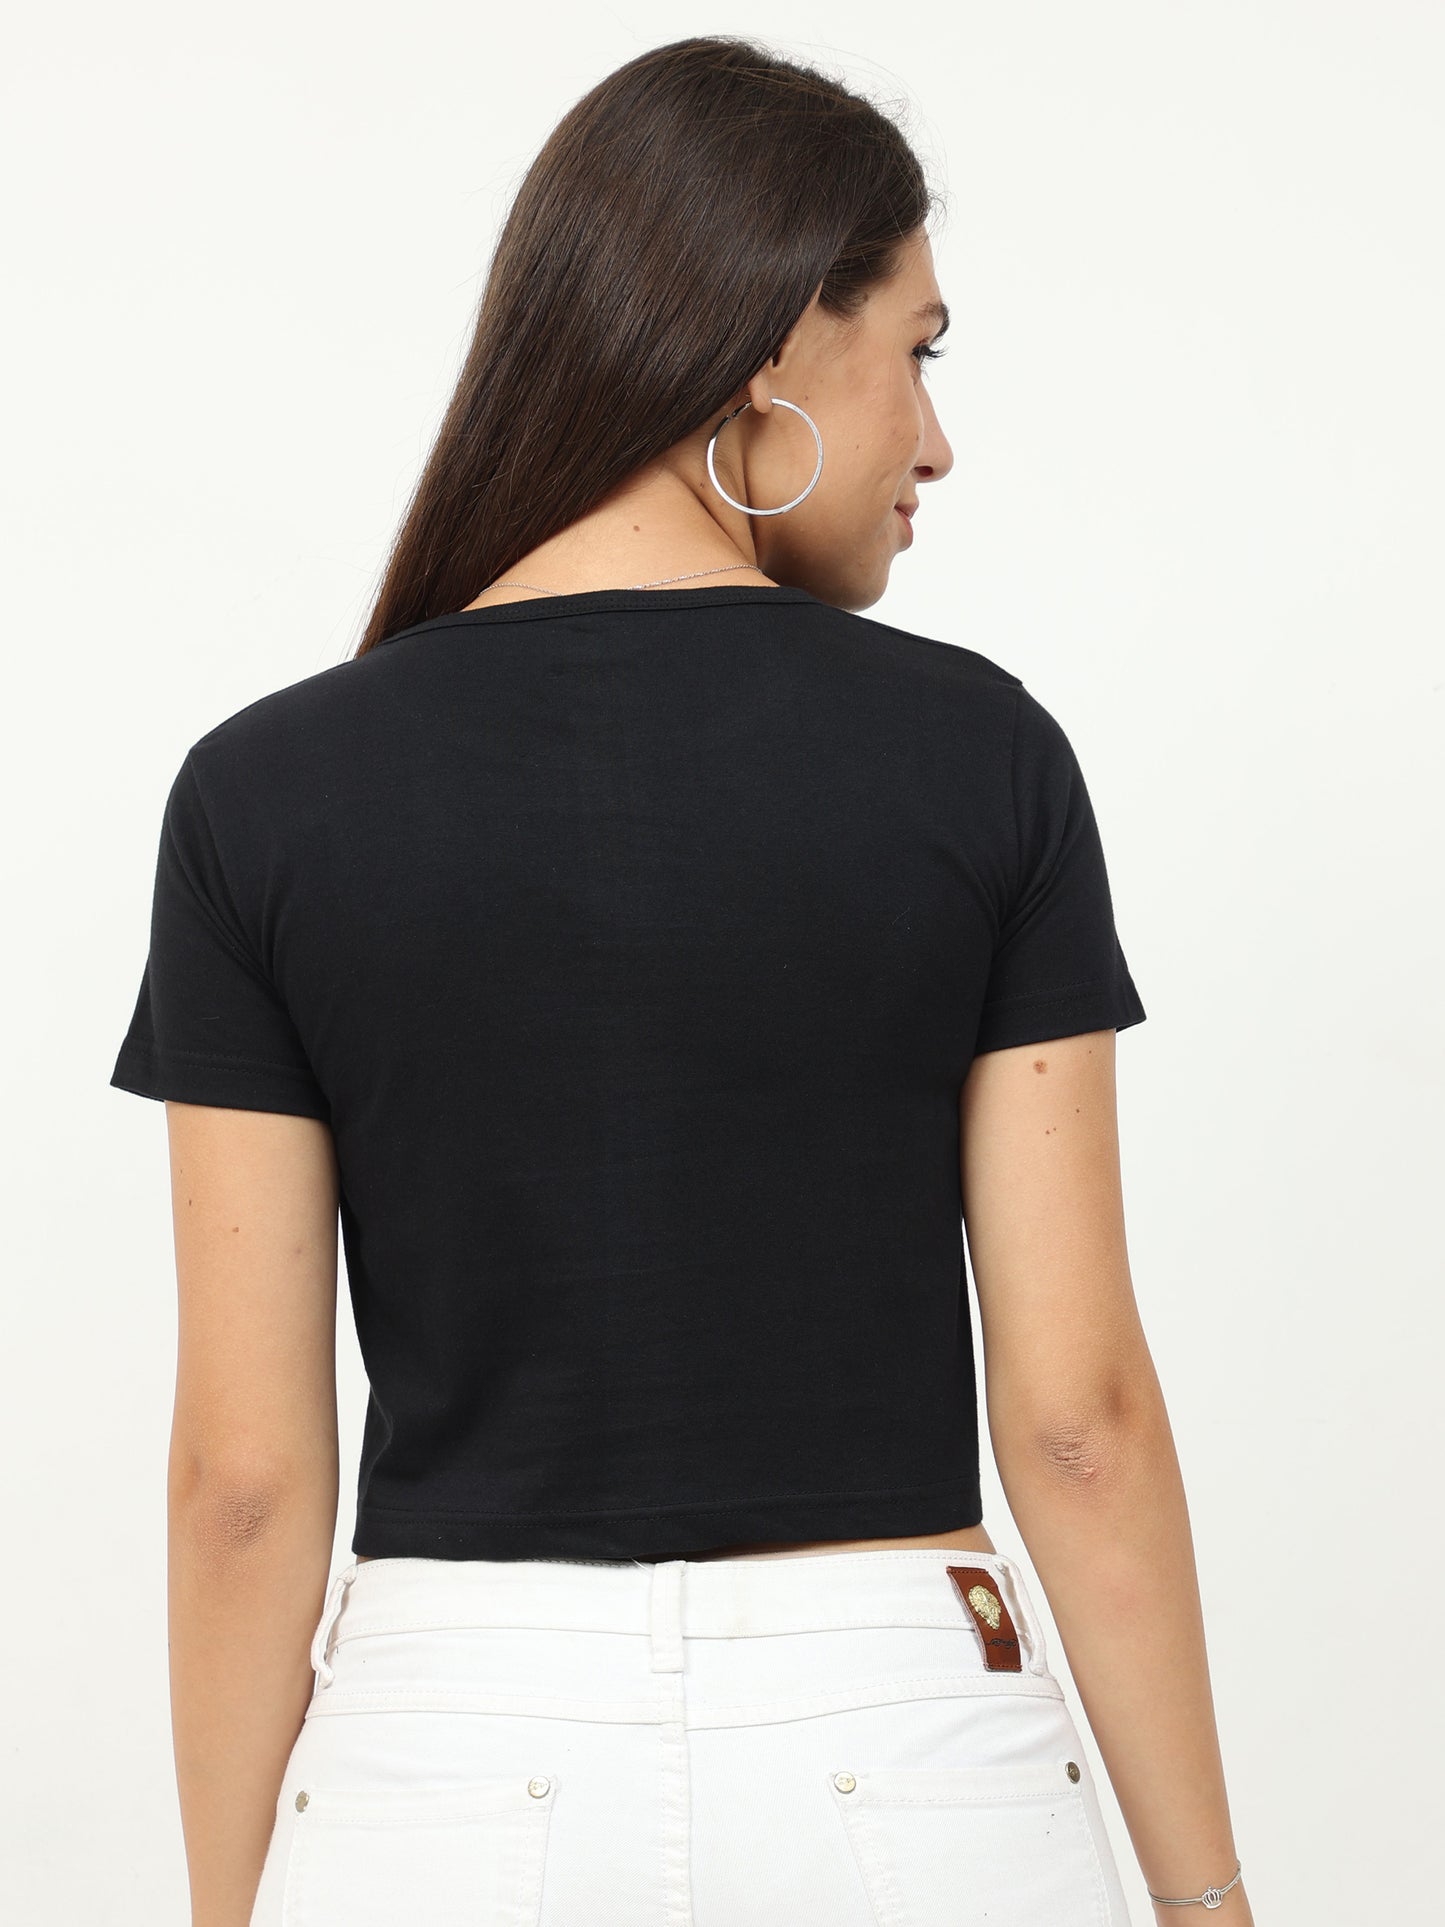 Women's Cotton Plain Round Neck Black Color Crop Top